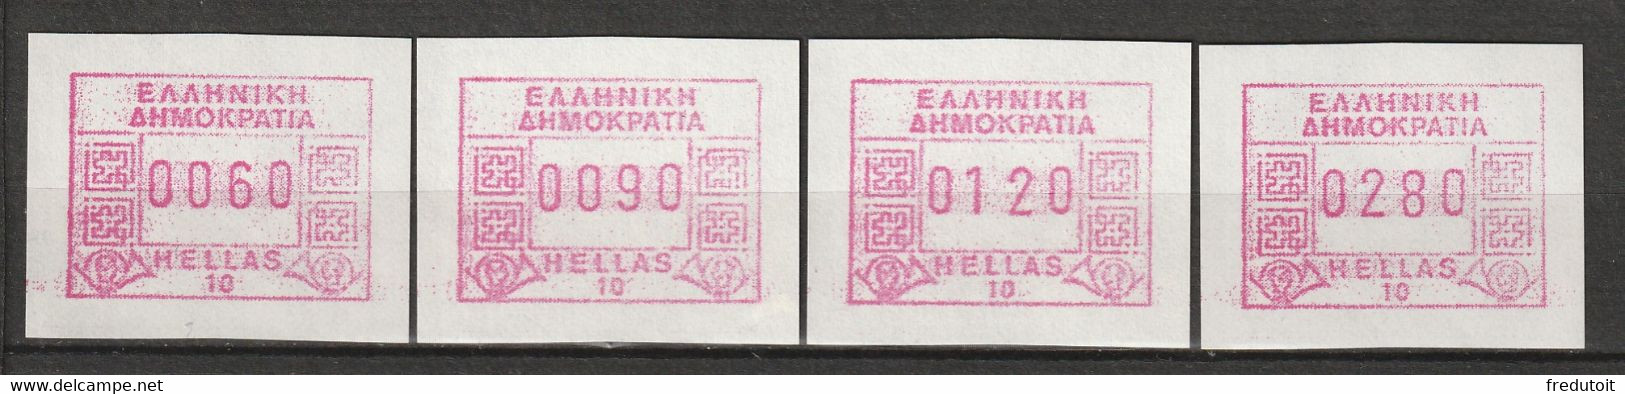 GRECE - Timbres De Distributeurs : ATM/Frama - N°9 ** (1991-92) 10 Akropolis - Machine Labels [ATM]